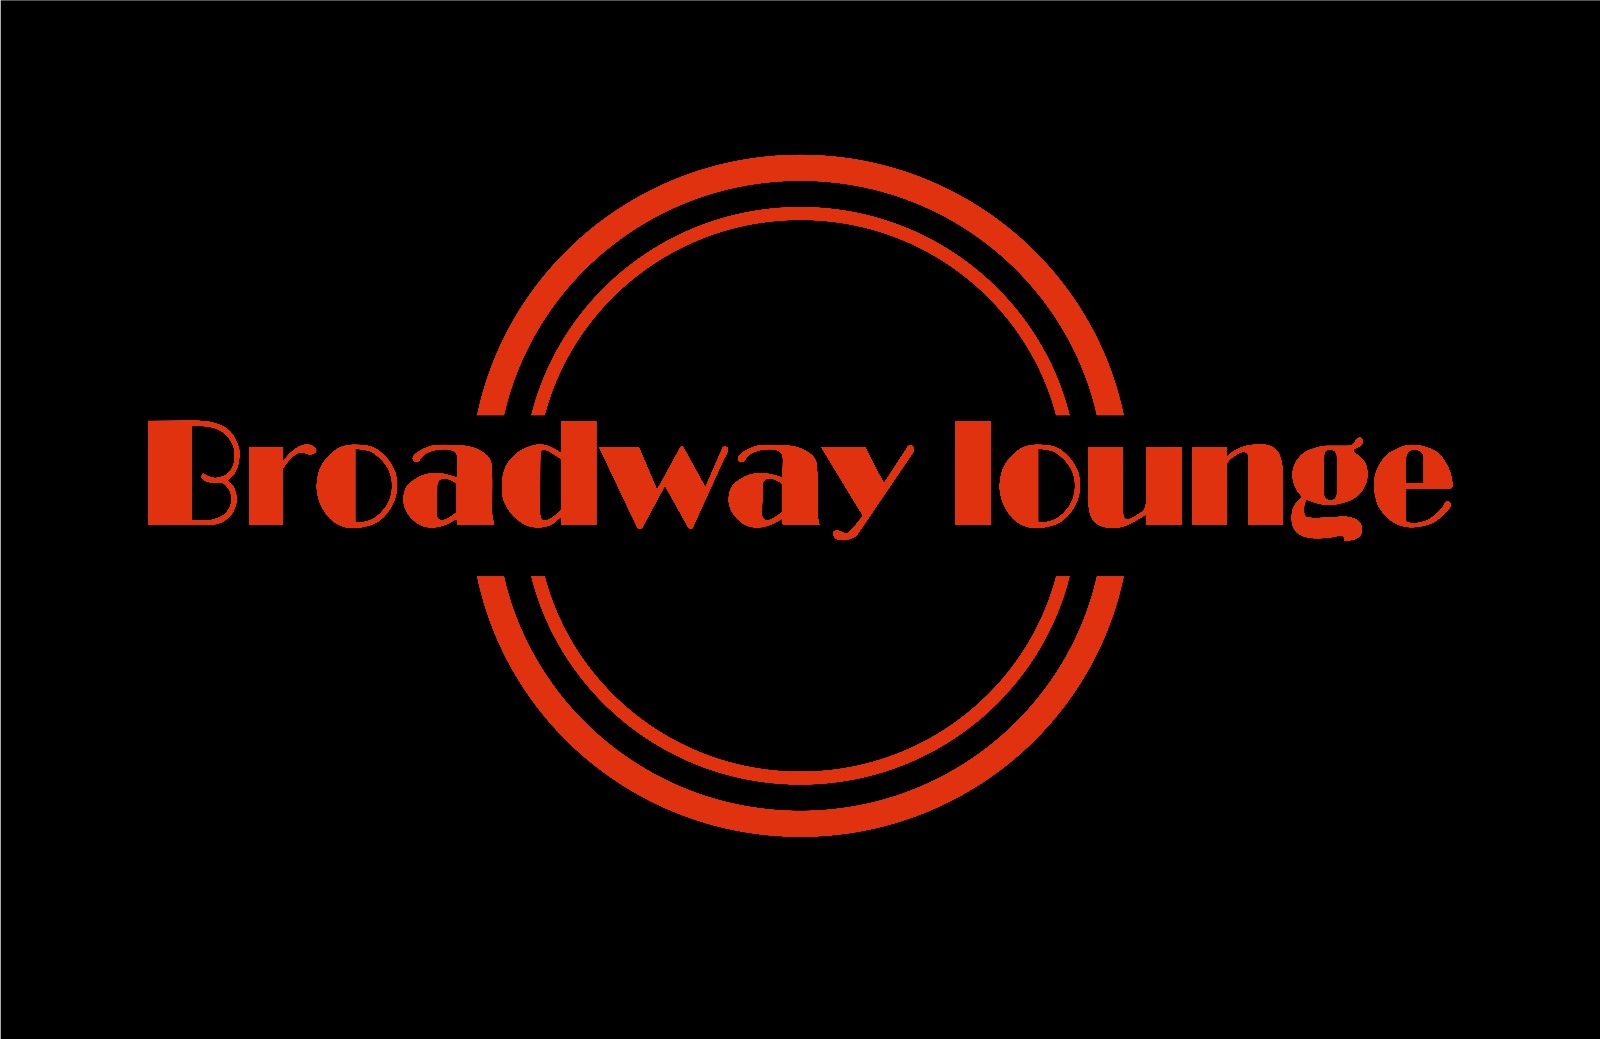 Broadway Lounge